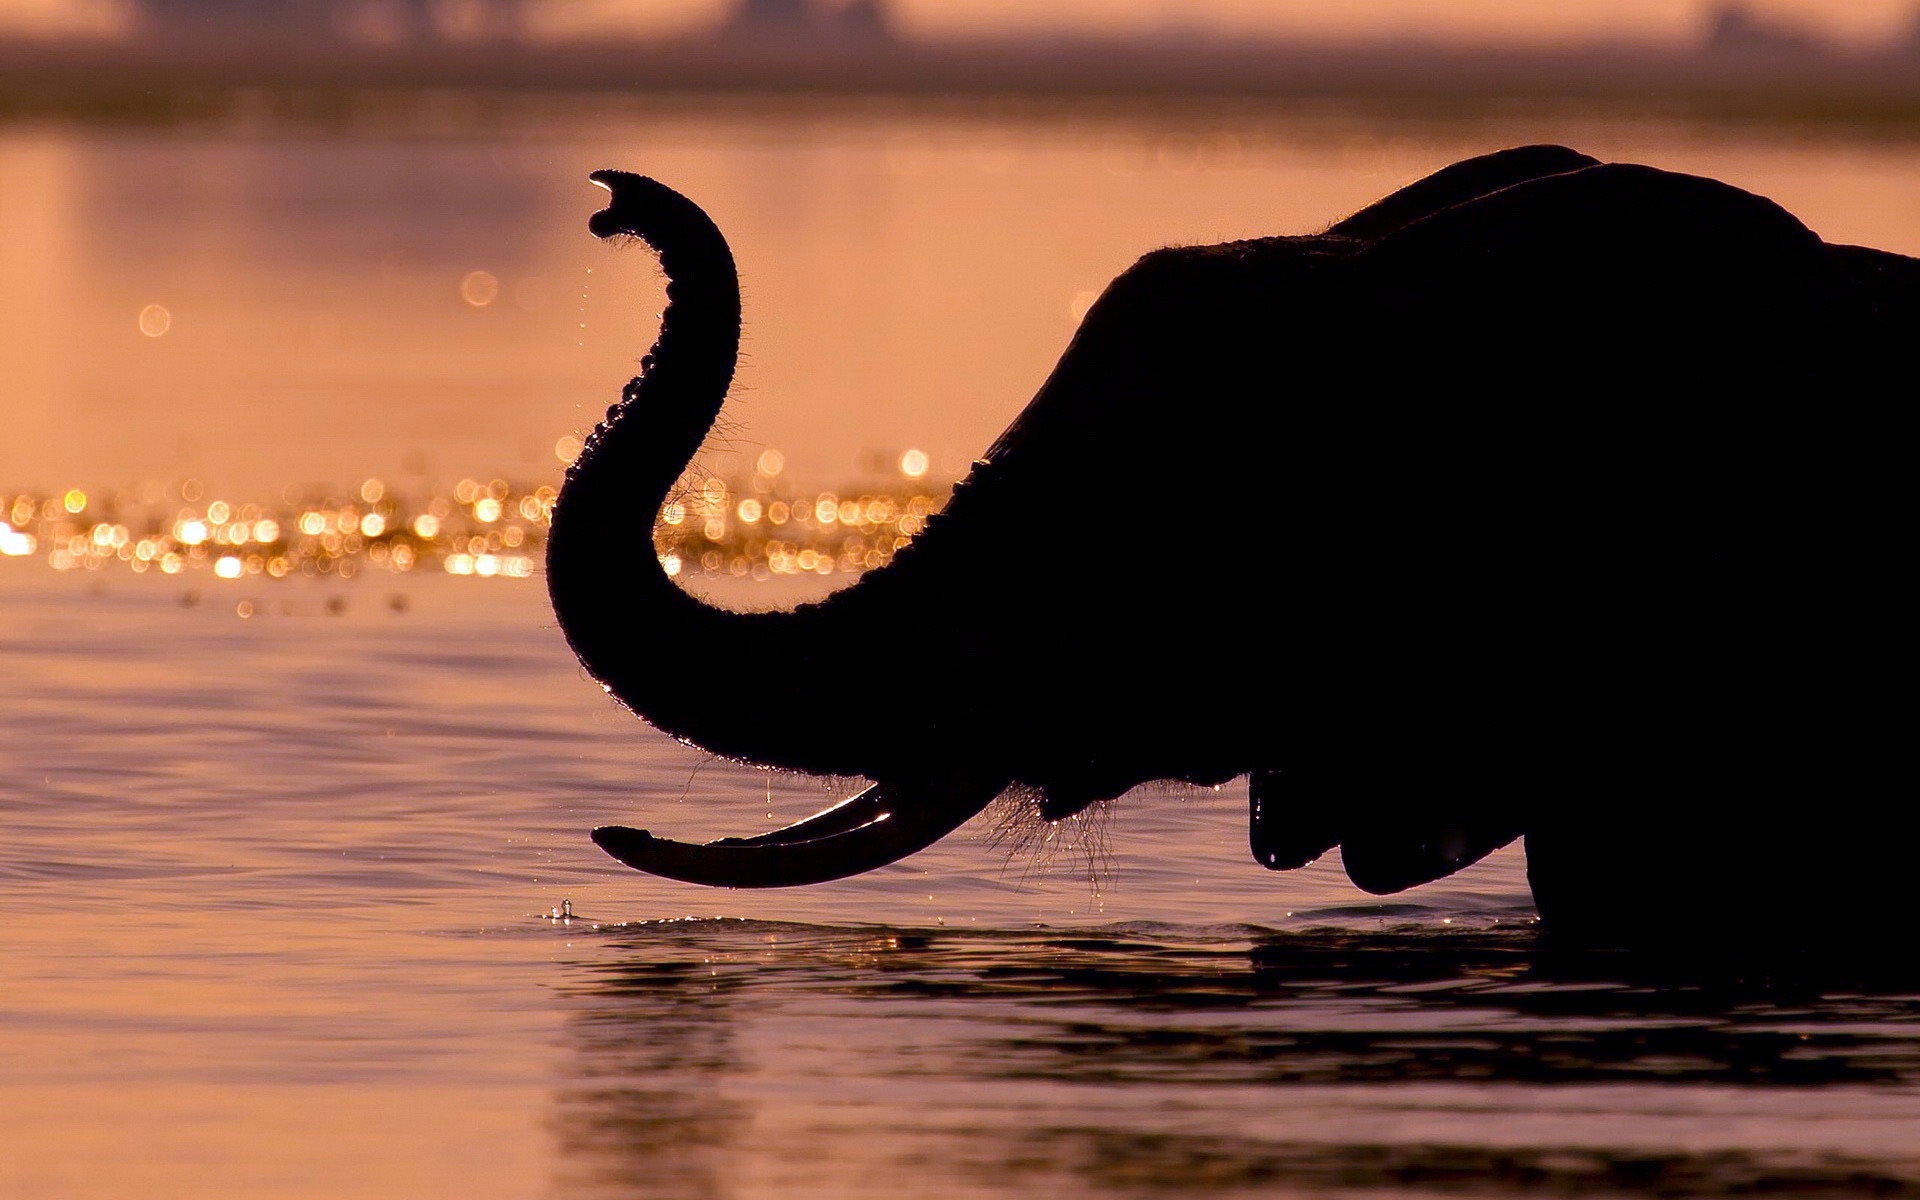 Original - Elephants Africa , HD Wallpaper & Backgrounds